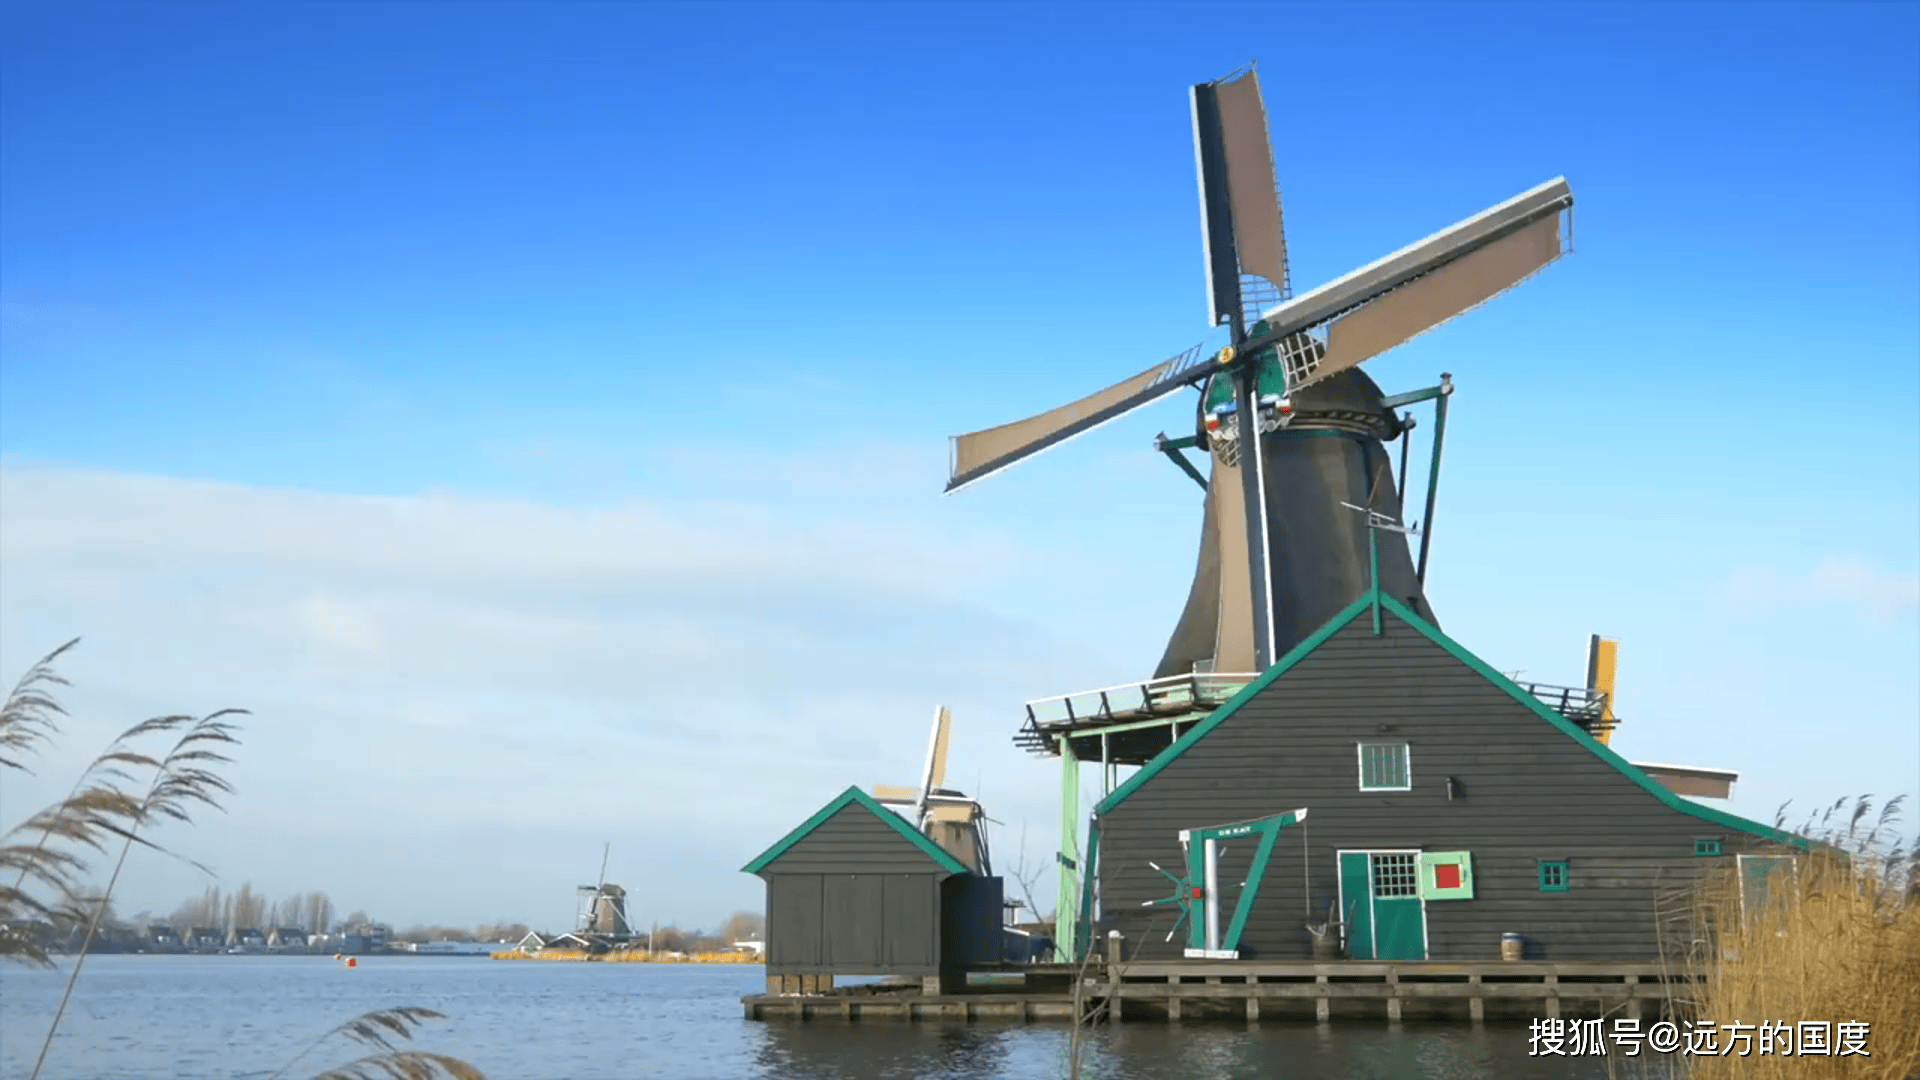 桑斯安斯风车村:荷兰乡村的诗意画卷